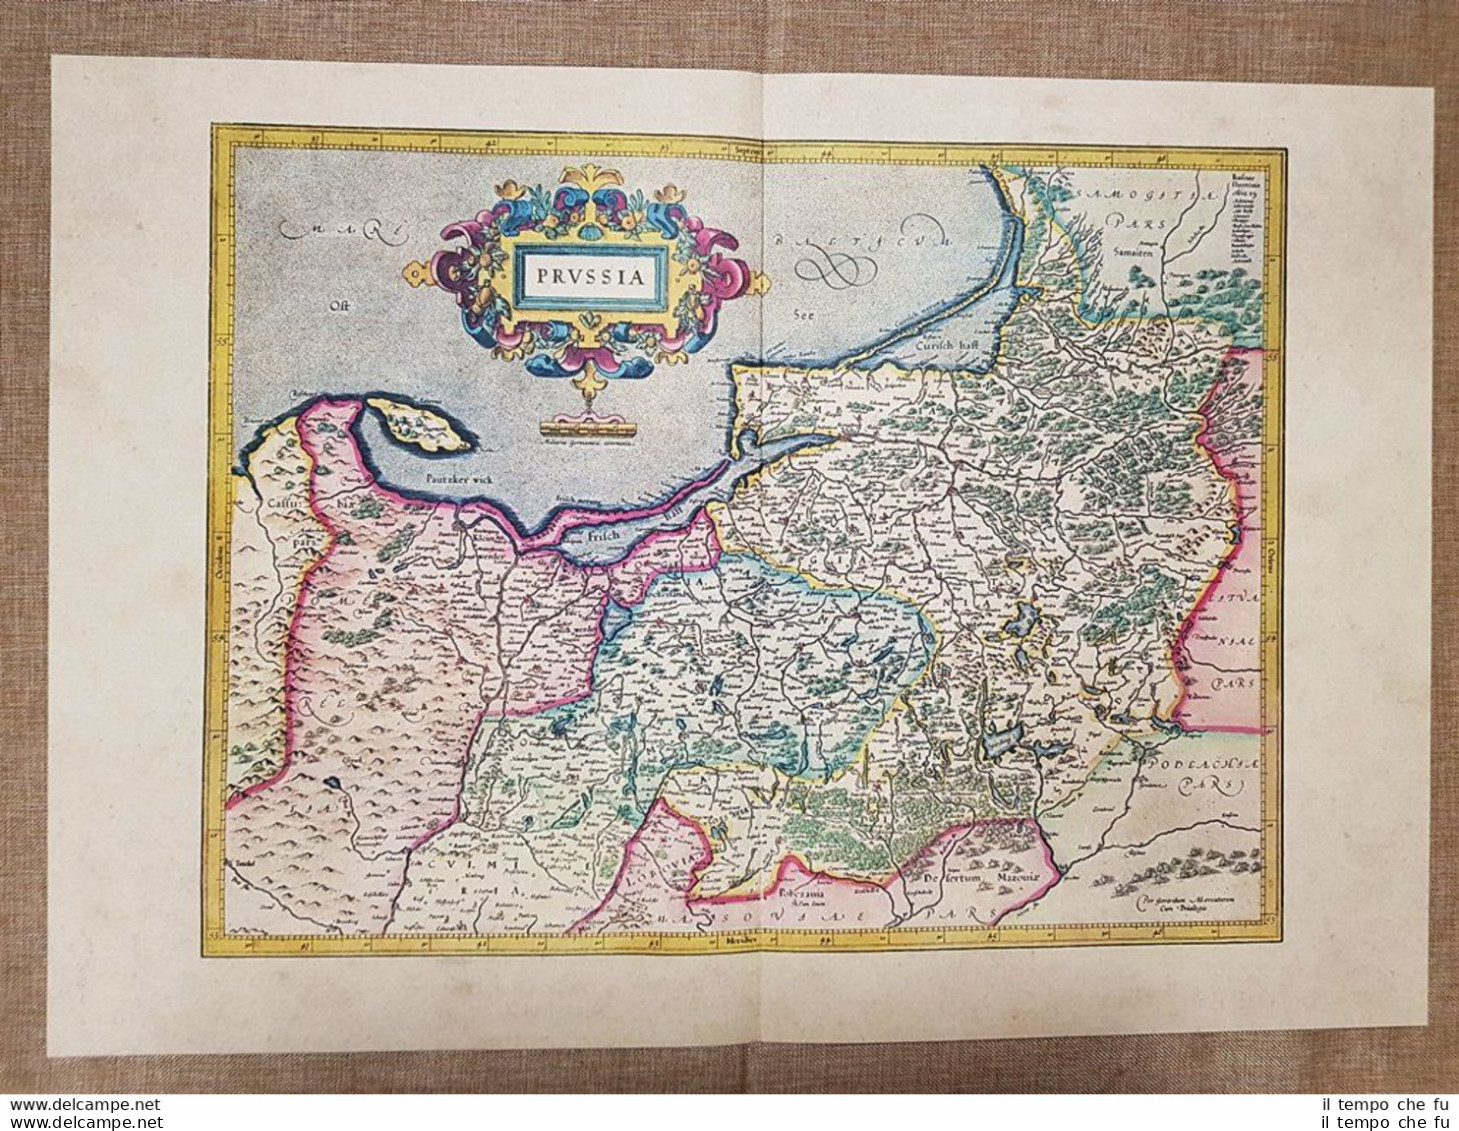 Carta Geografica Mappa Borussia Prussia Anno 1595 Di Mercatore Mercator Ristampa - Cartes Géographiques